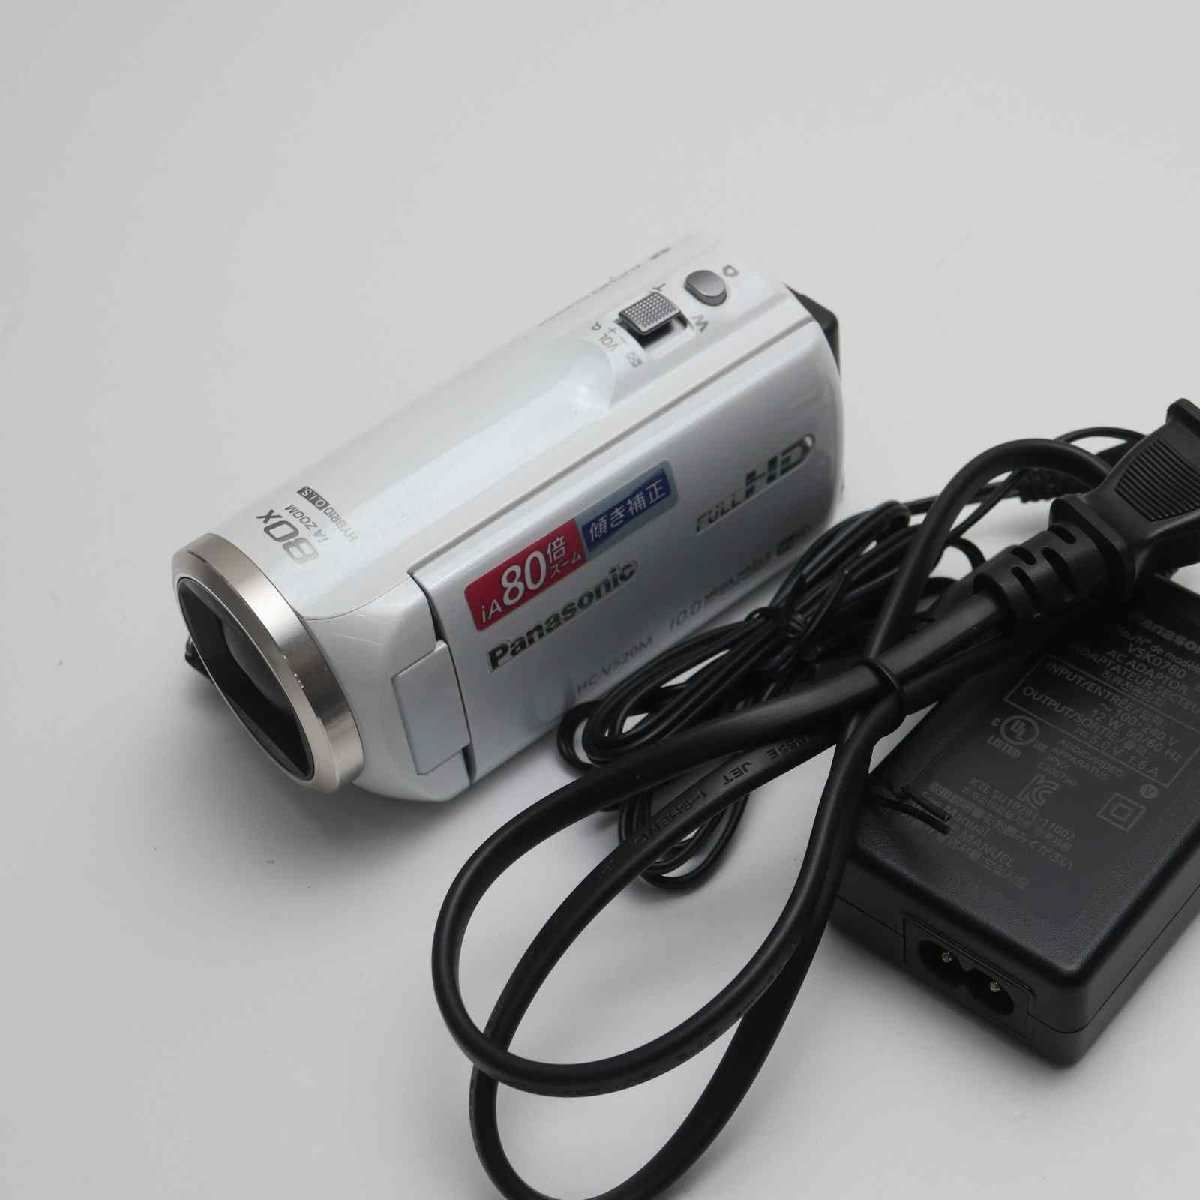 最高の 即日発送 ホワイト HC-V520M 超美品 デジタルビデオカメラ 土日